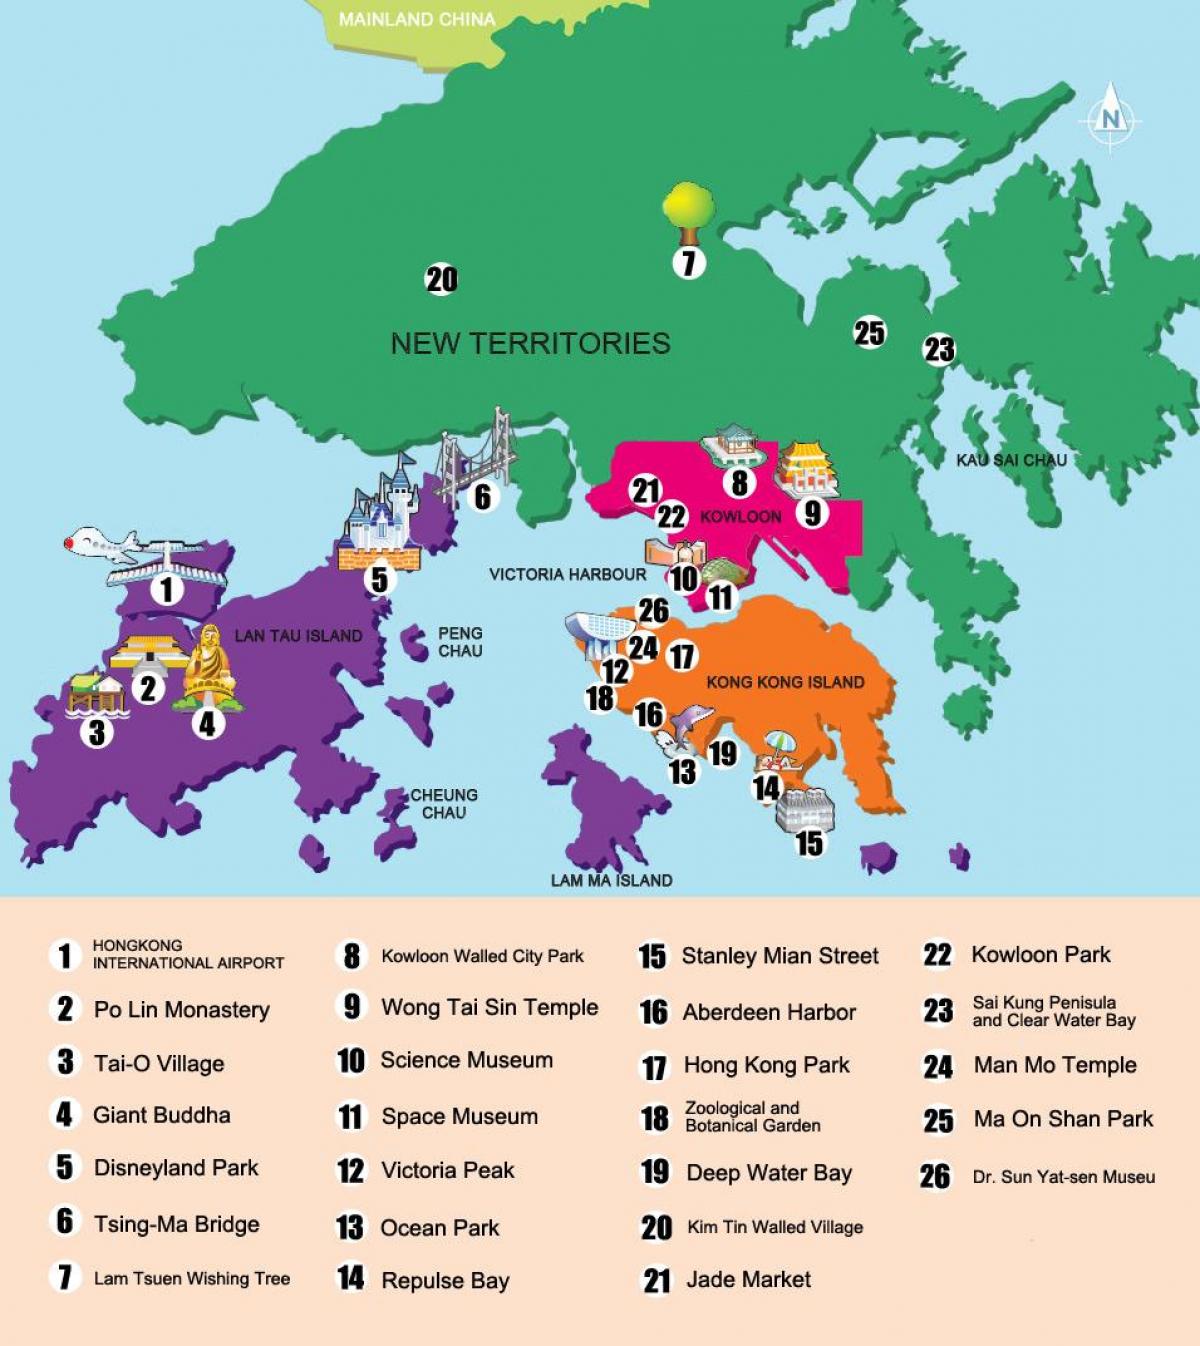 خريطة مشاهدة المعالم السياحية في هونغ كونغ